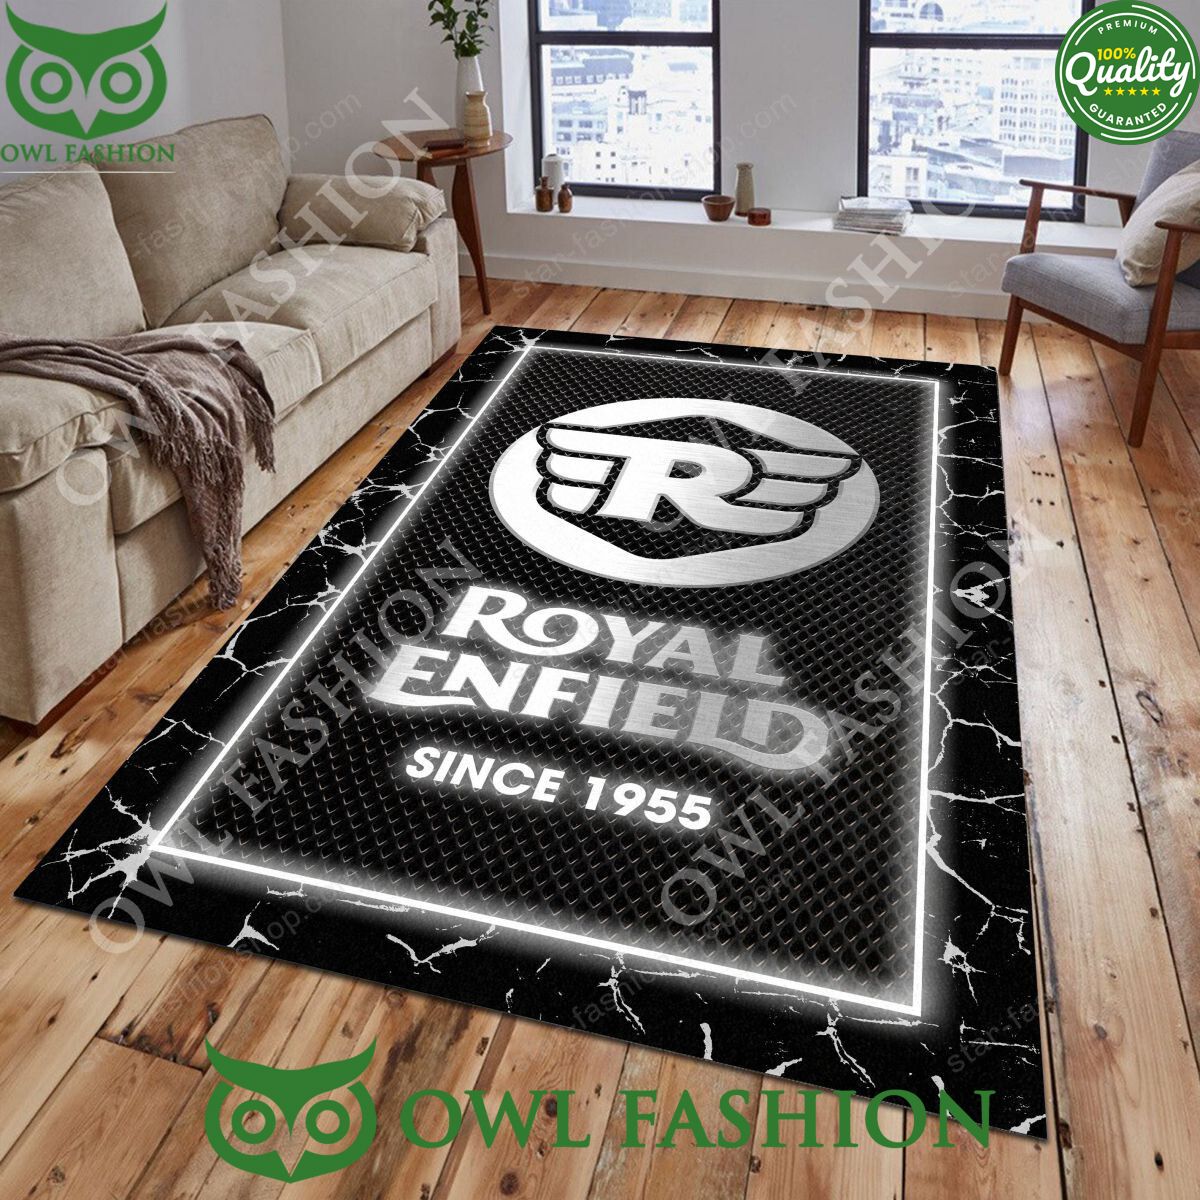 Royal Enfield Limited Trending Design Carpet Rug